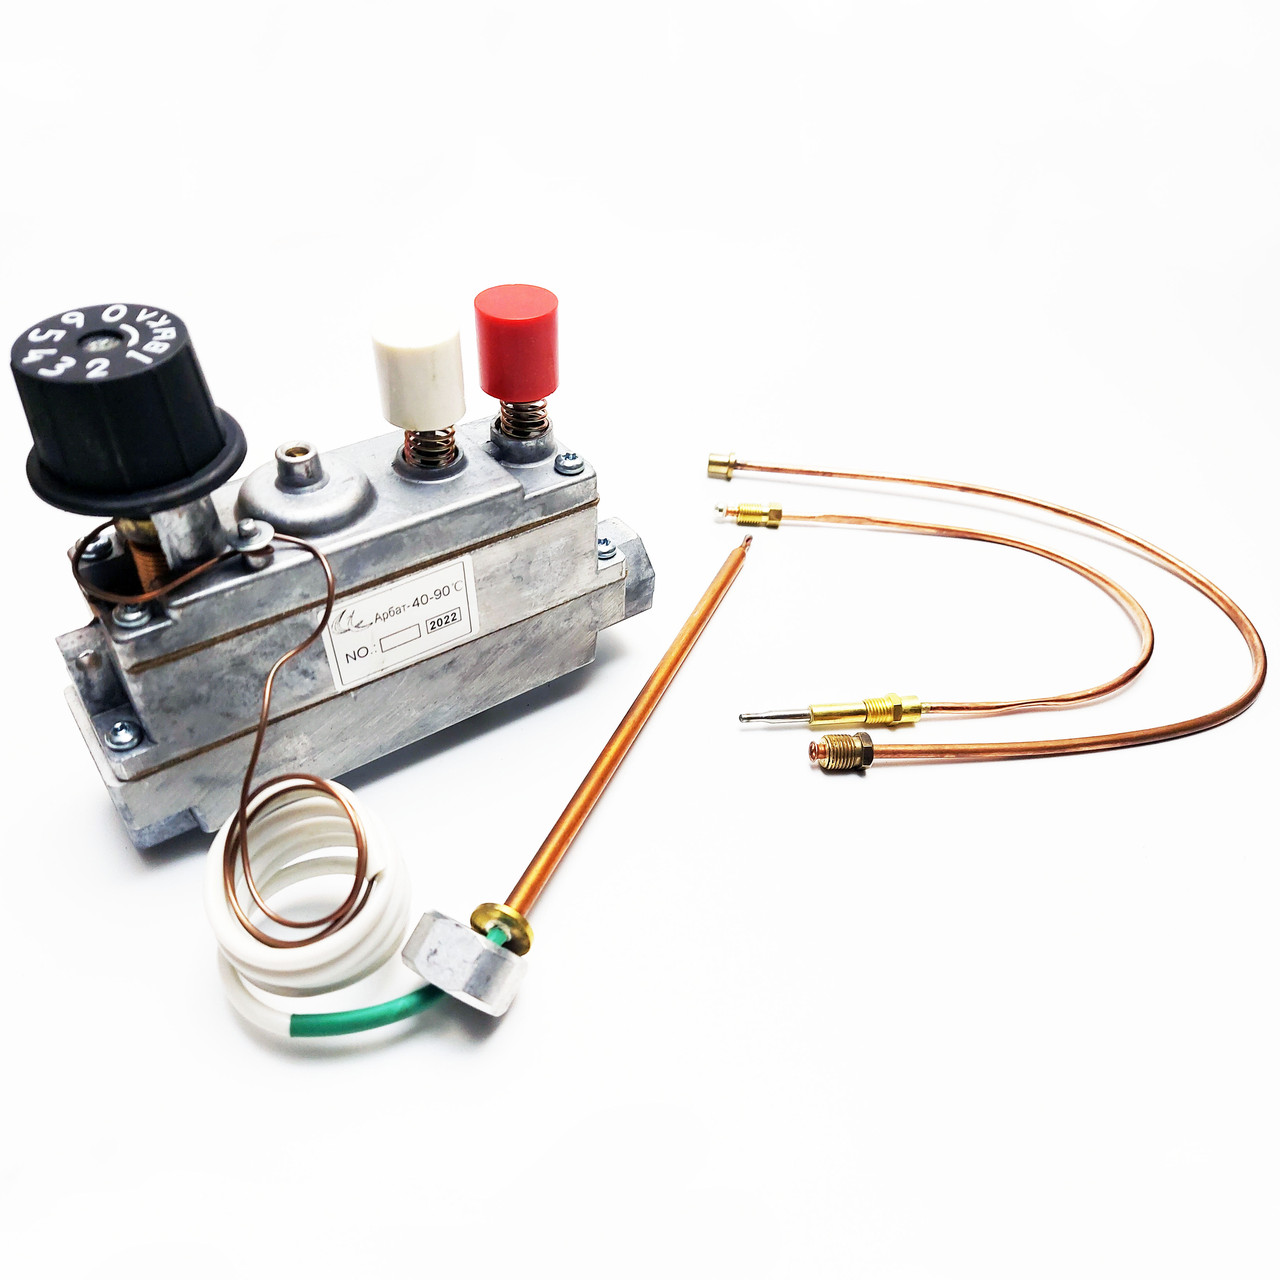 Газова автоматика Арбат-1, Арбат-11, Оріон із мокрим сильфоном у комплекті з термопарою і трубкою запальника